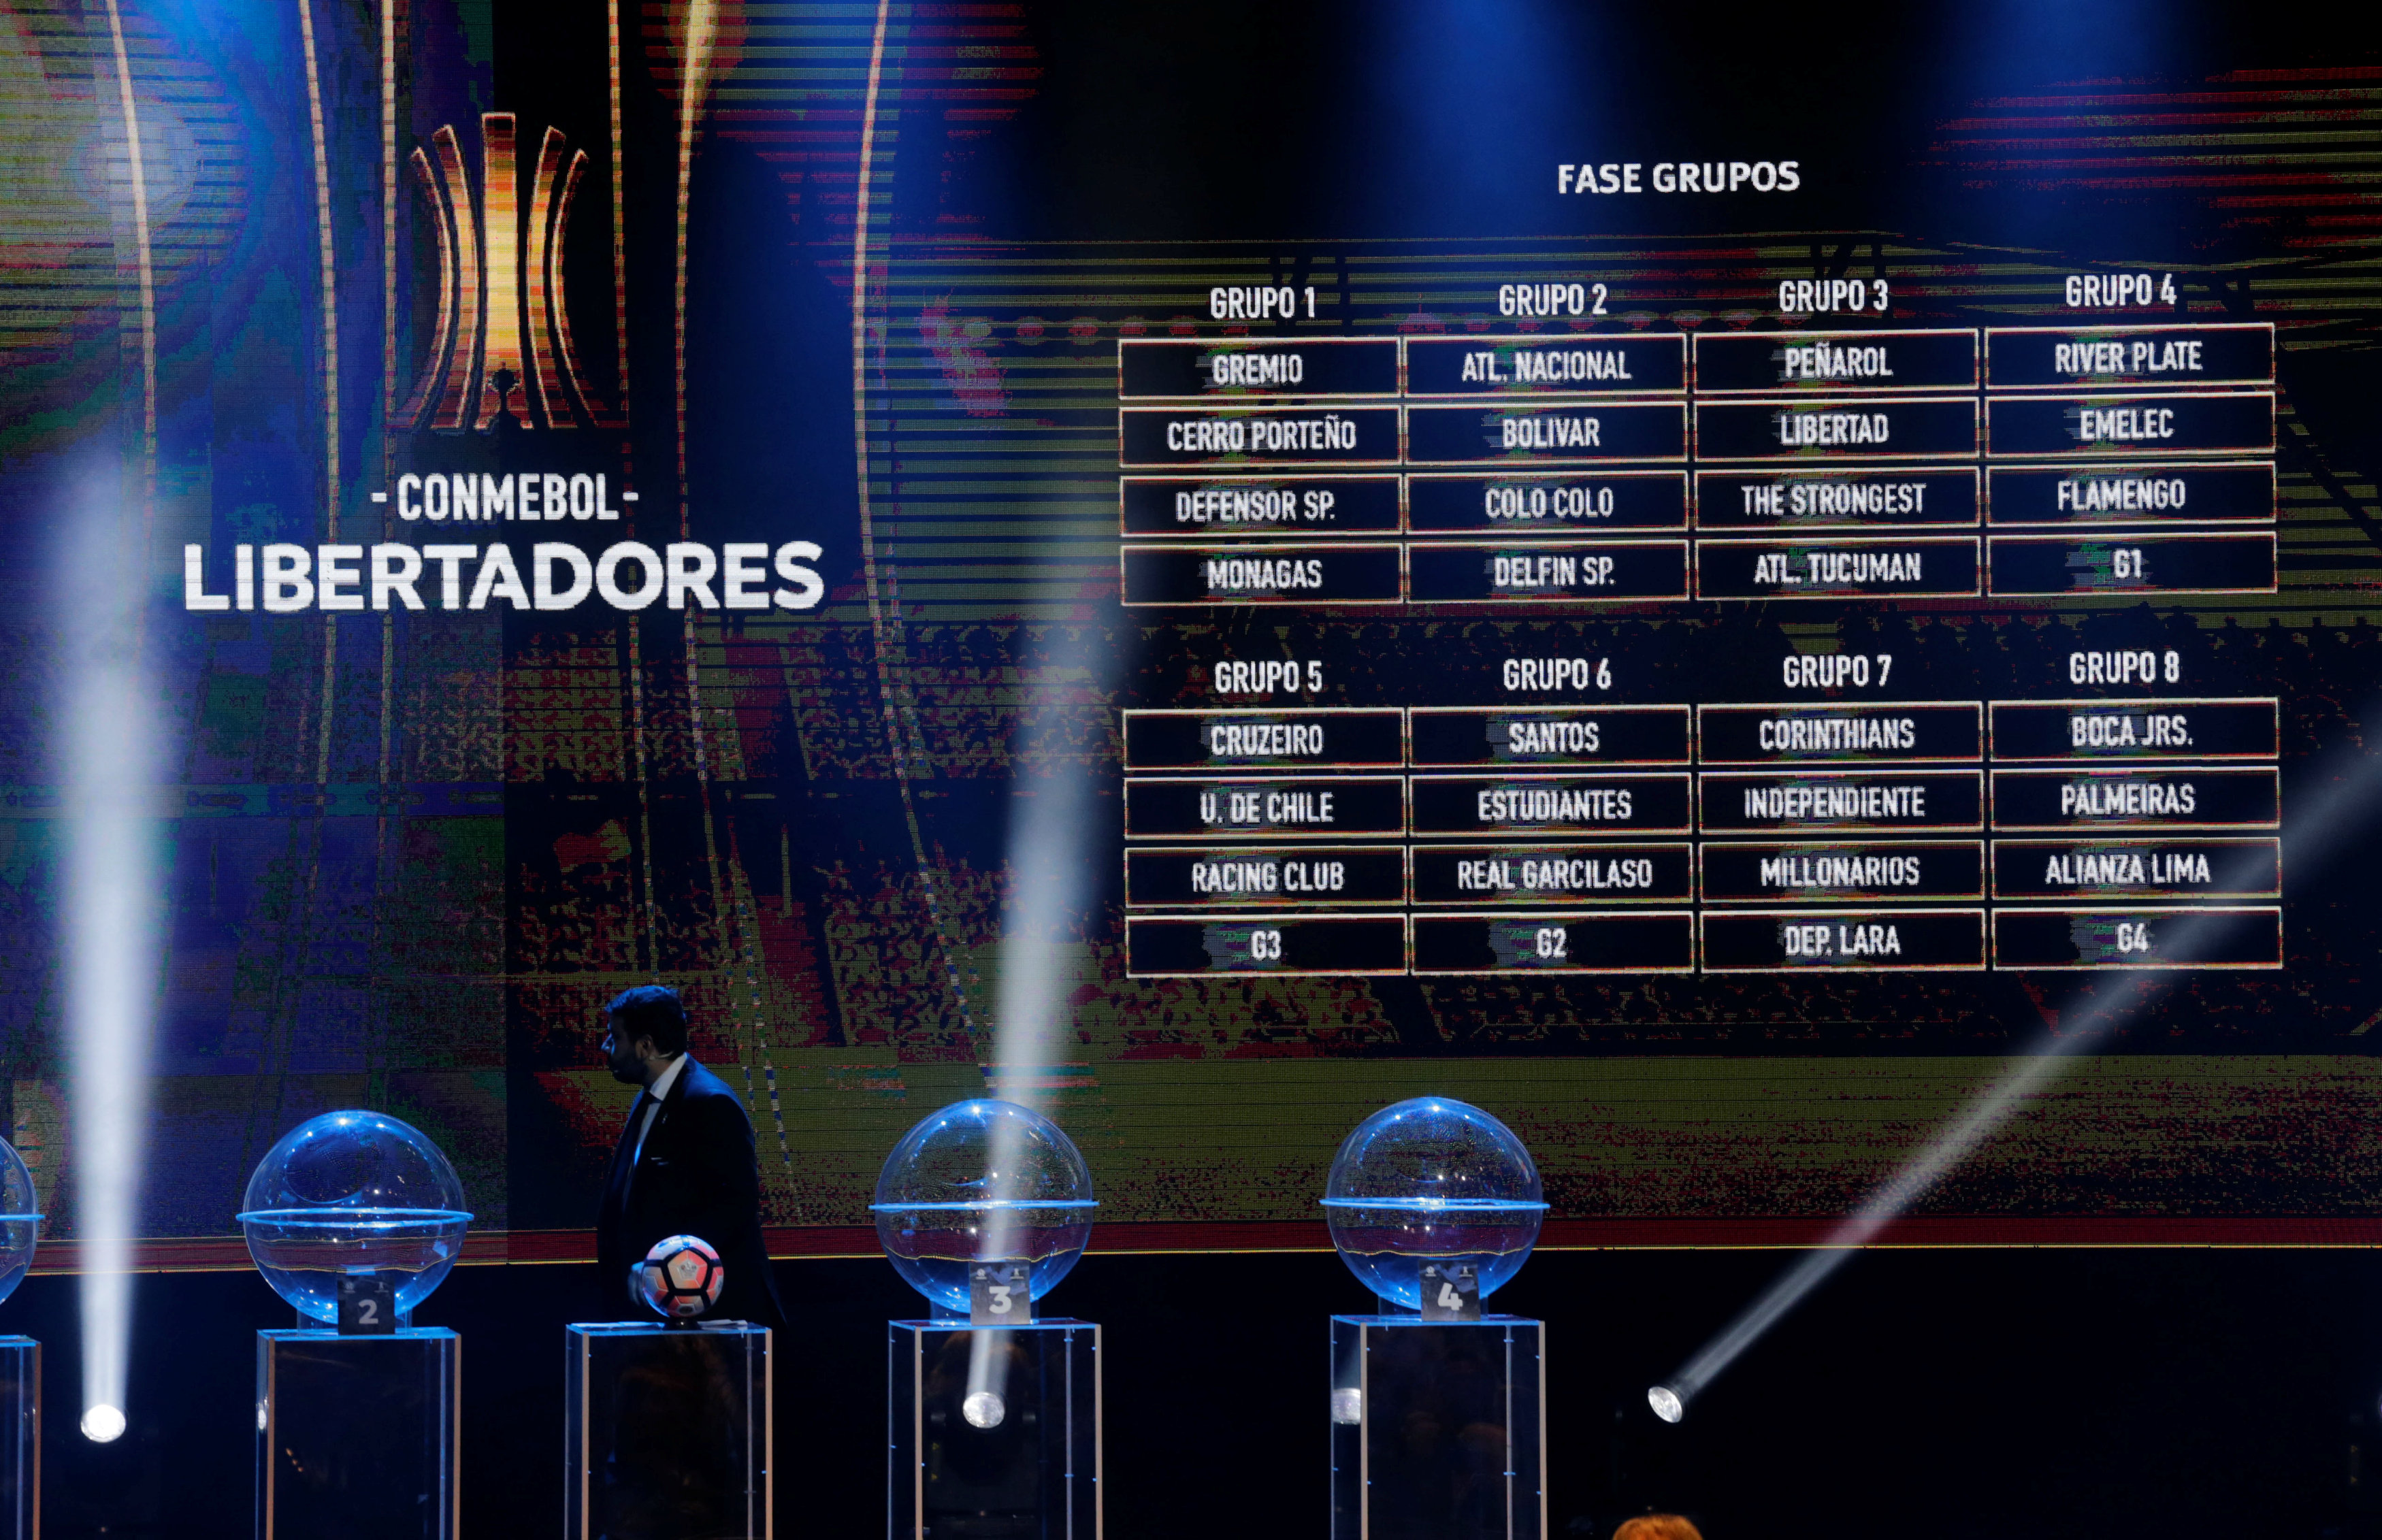 Conmebol define calendário de 2019 com final da Libertadores em novembro